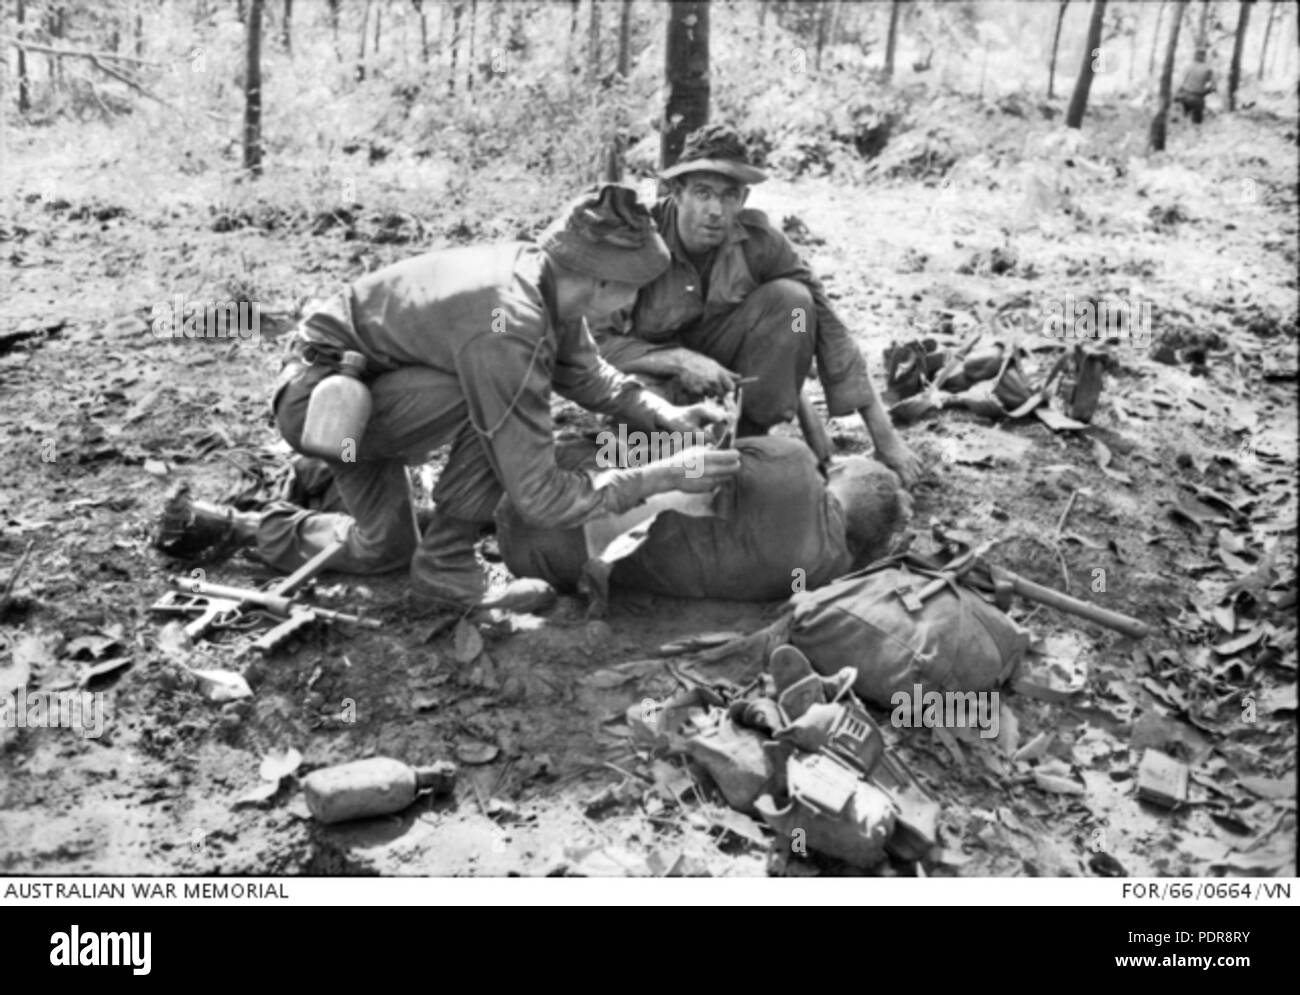 84 Medic pour prodiguer les premiers soins aux blessés au soldat australien Long Tan (AWM POUR660664VN) Banque D'Images